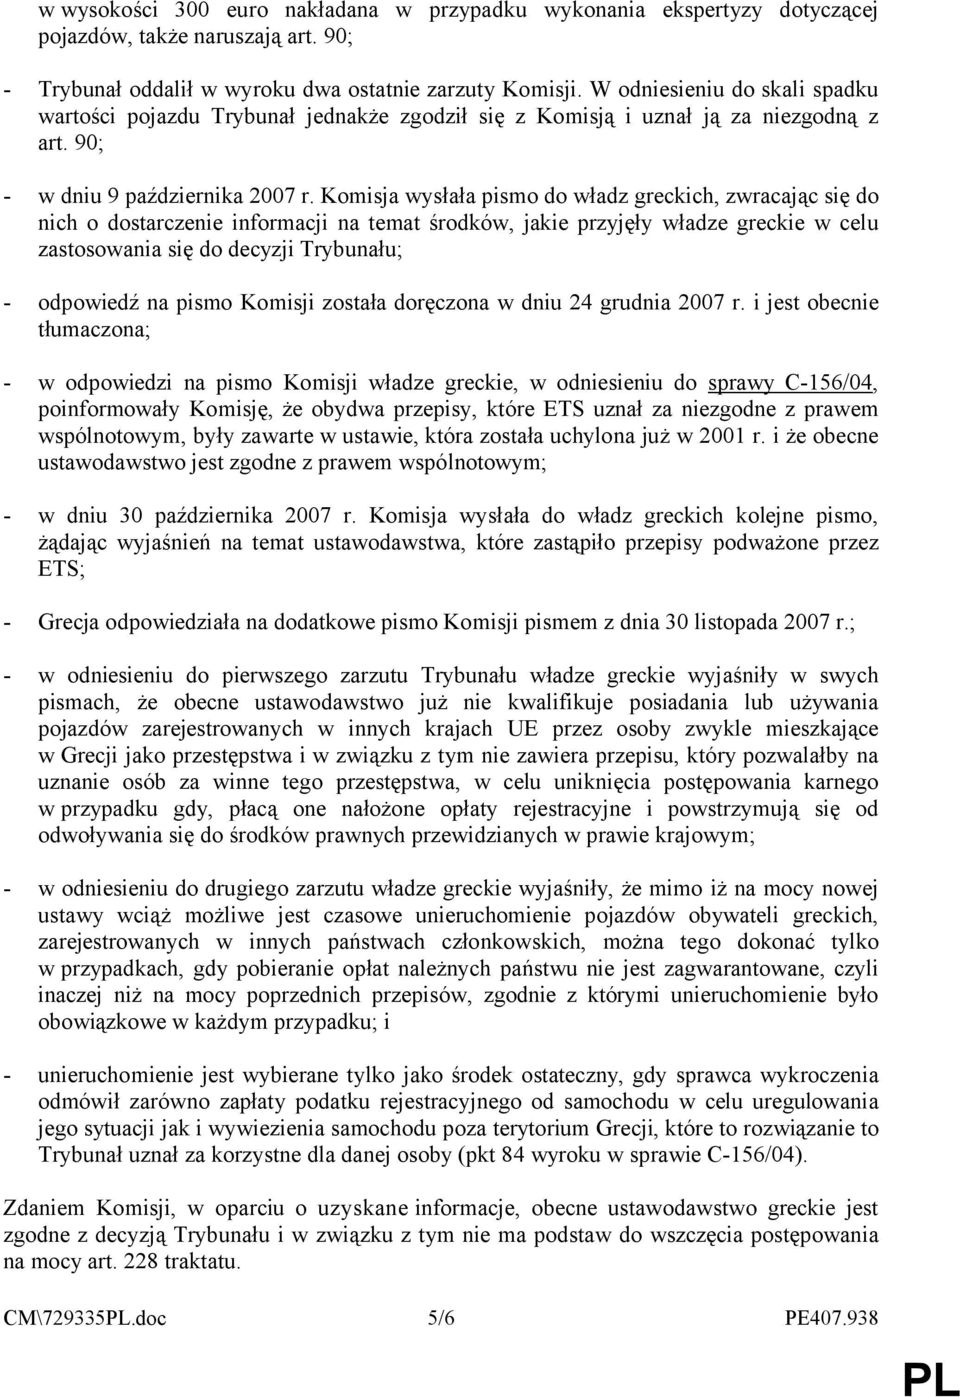 Komisja wysłała pismo do władz greckich, zwracając się do nich o dostarczenie informacji na temat środków, jakie przyjęły władze greckie w celu zastosowania się do decyzji Trybunału; - odpowiedź na